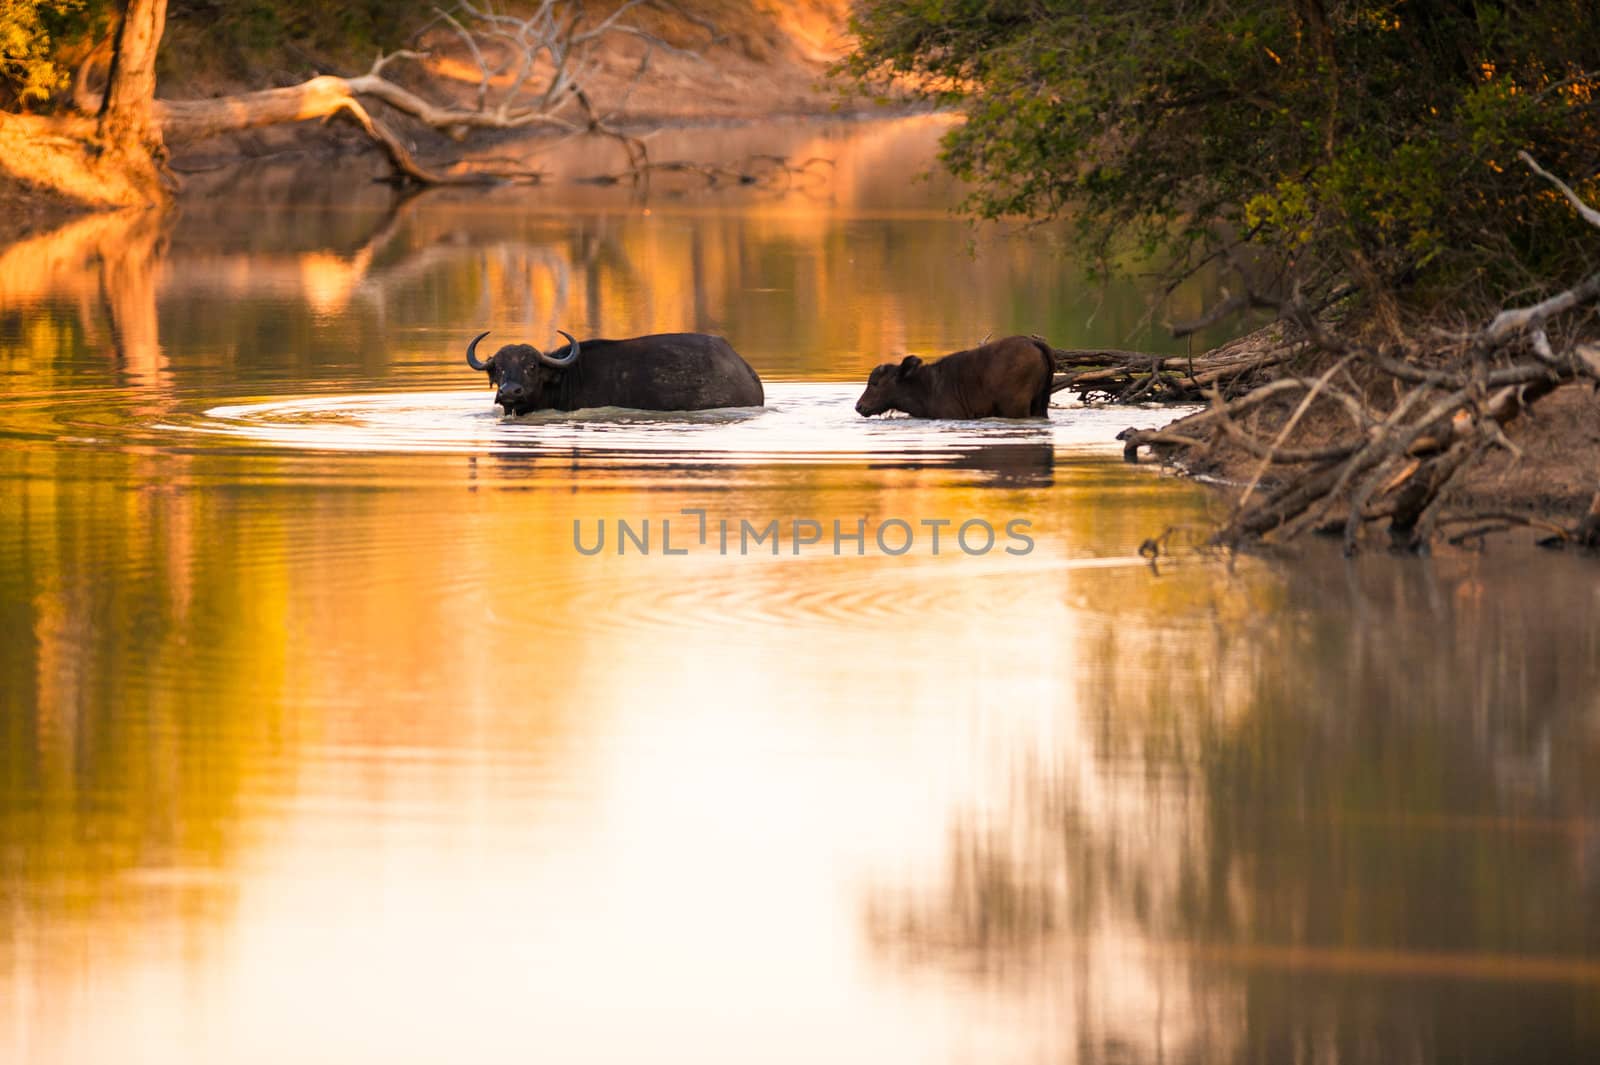 Cape buffalo in water by edan